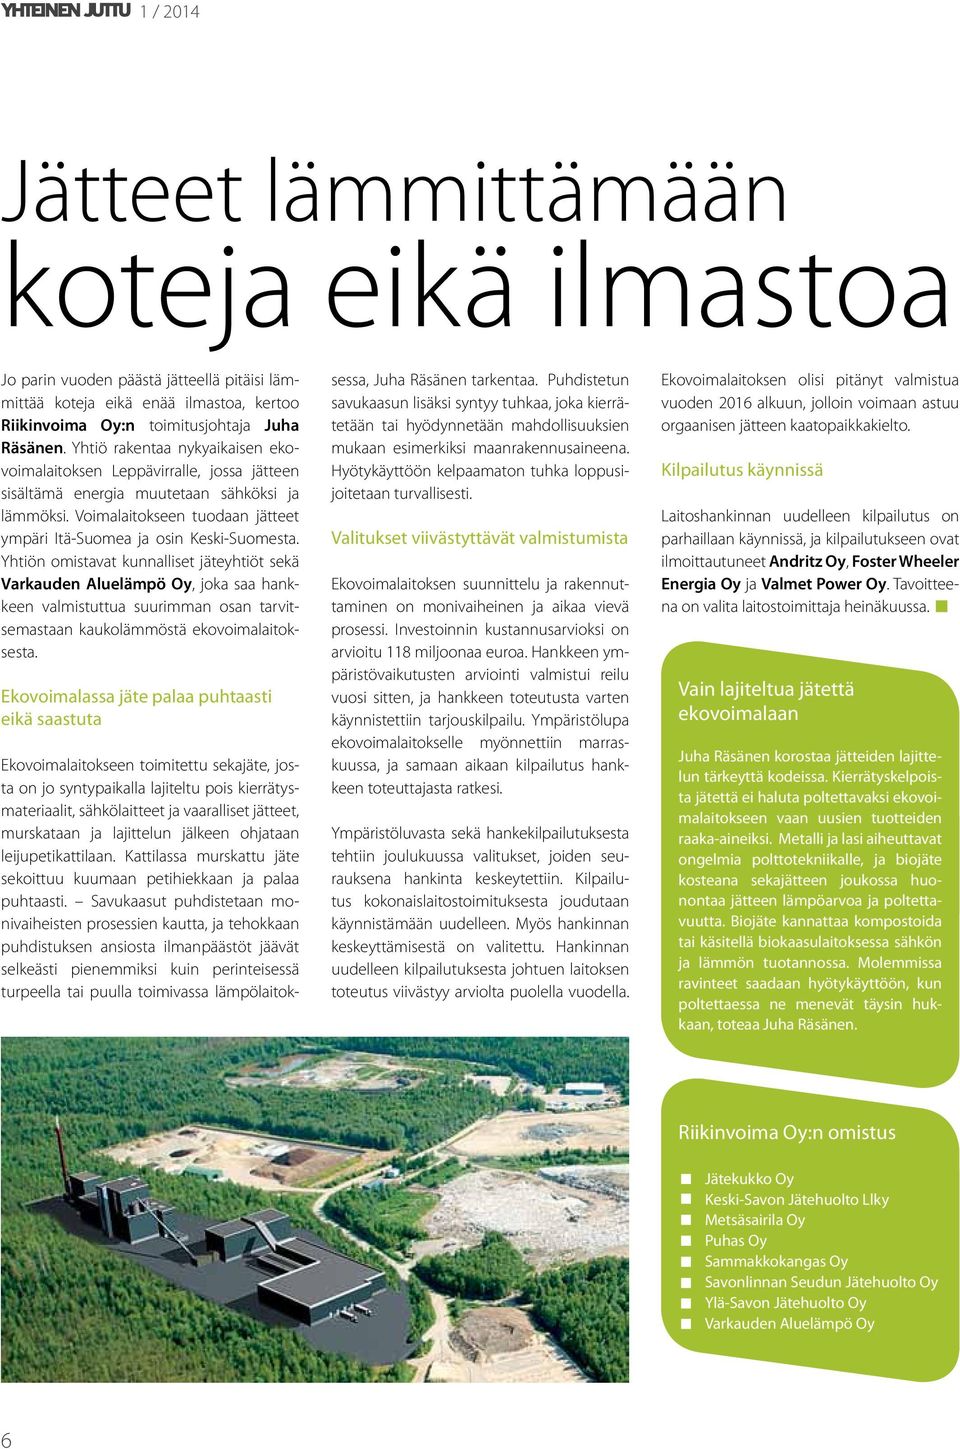 Yhtiön omistavat kunnalliset jäteyhtiöt sekä Varkauden Aluelämpö Oy, joka saa hankkeen valmistuttua suurimman osan tarvitsemastaan kaukolämmöstä ekovoimalaitoksesta.